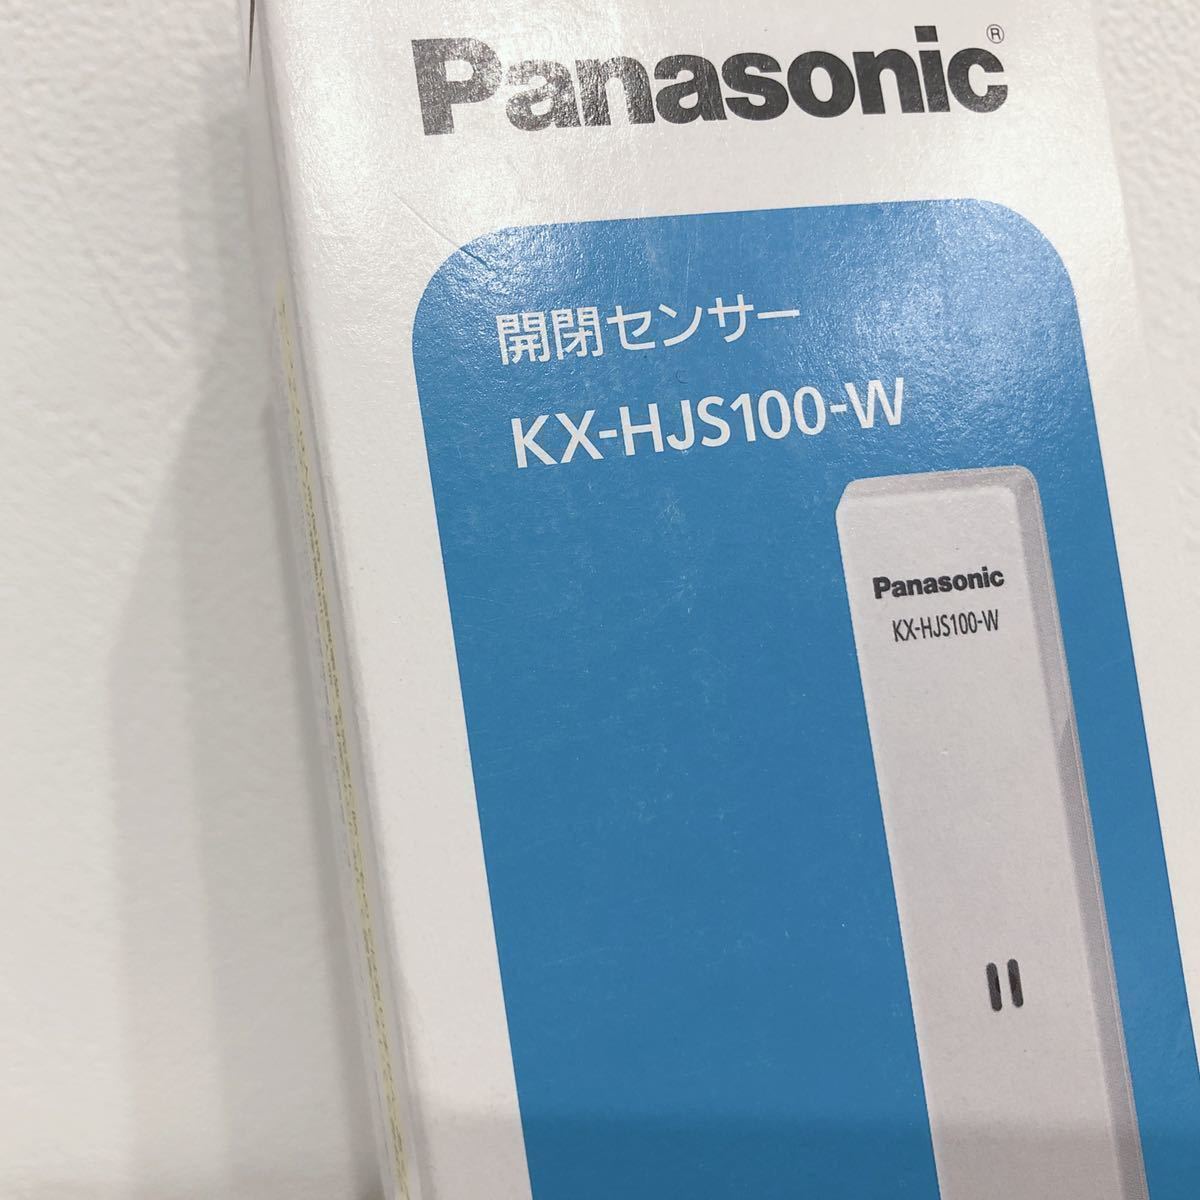 ☆新品未開封☆ Panasonic パナソニック 開閉センサー ホワイト 1台入り KX-HJS100-W ホームネットワークシステム 送料無料